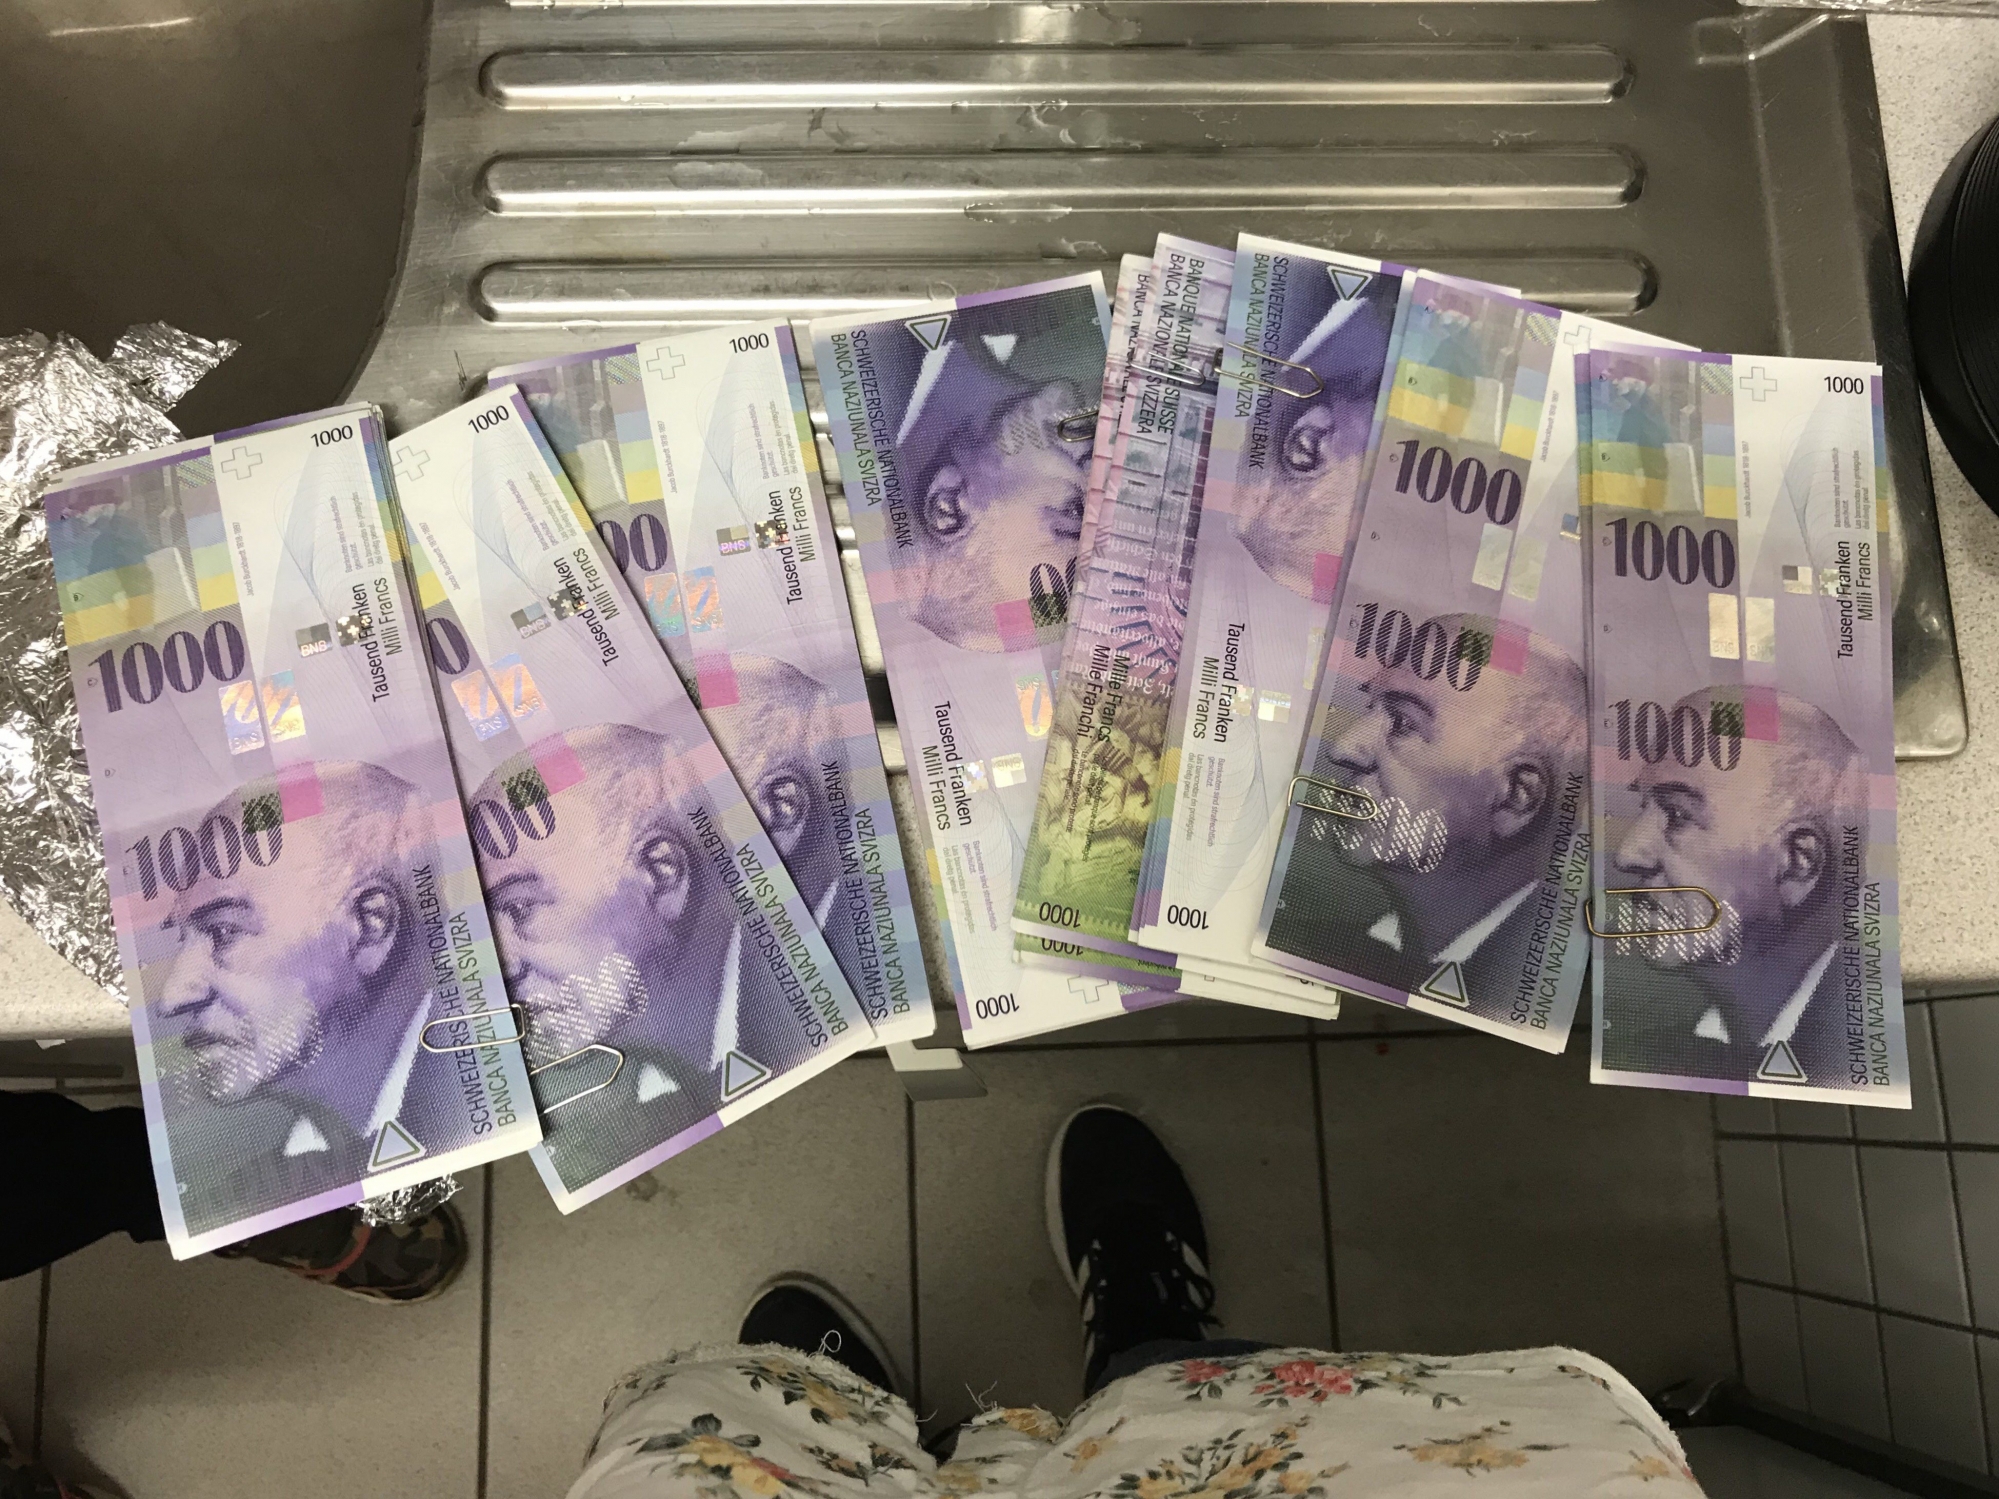 Les liasses de billets de 1000 francs trouvés par le Coin bleu ce matin